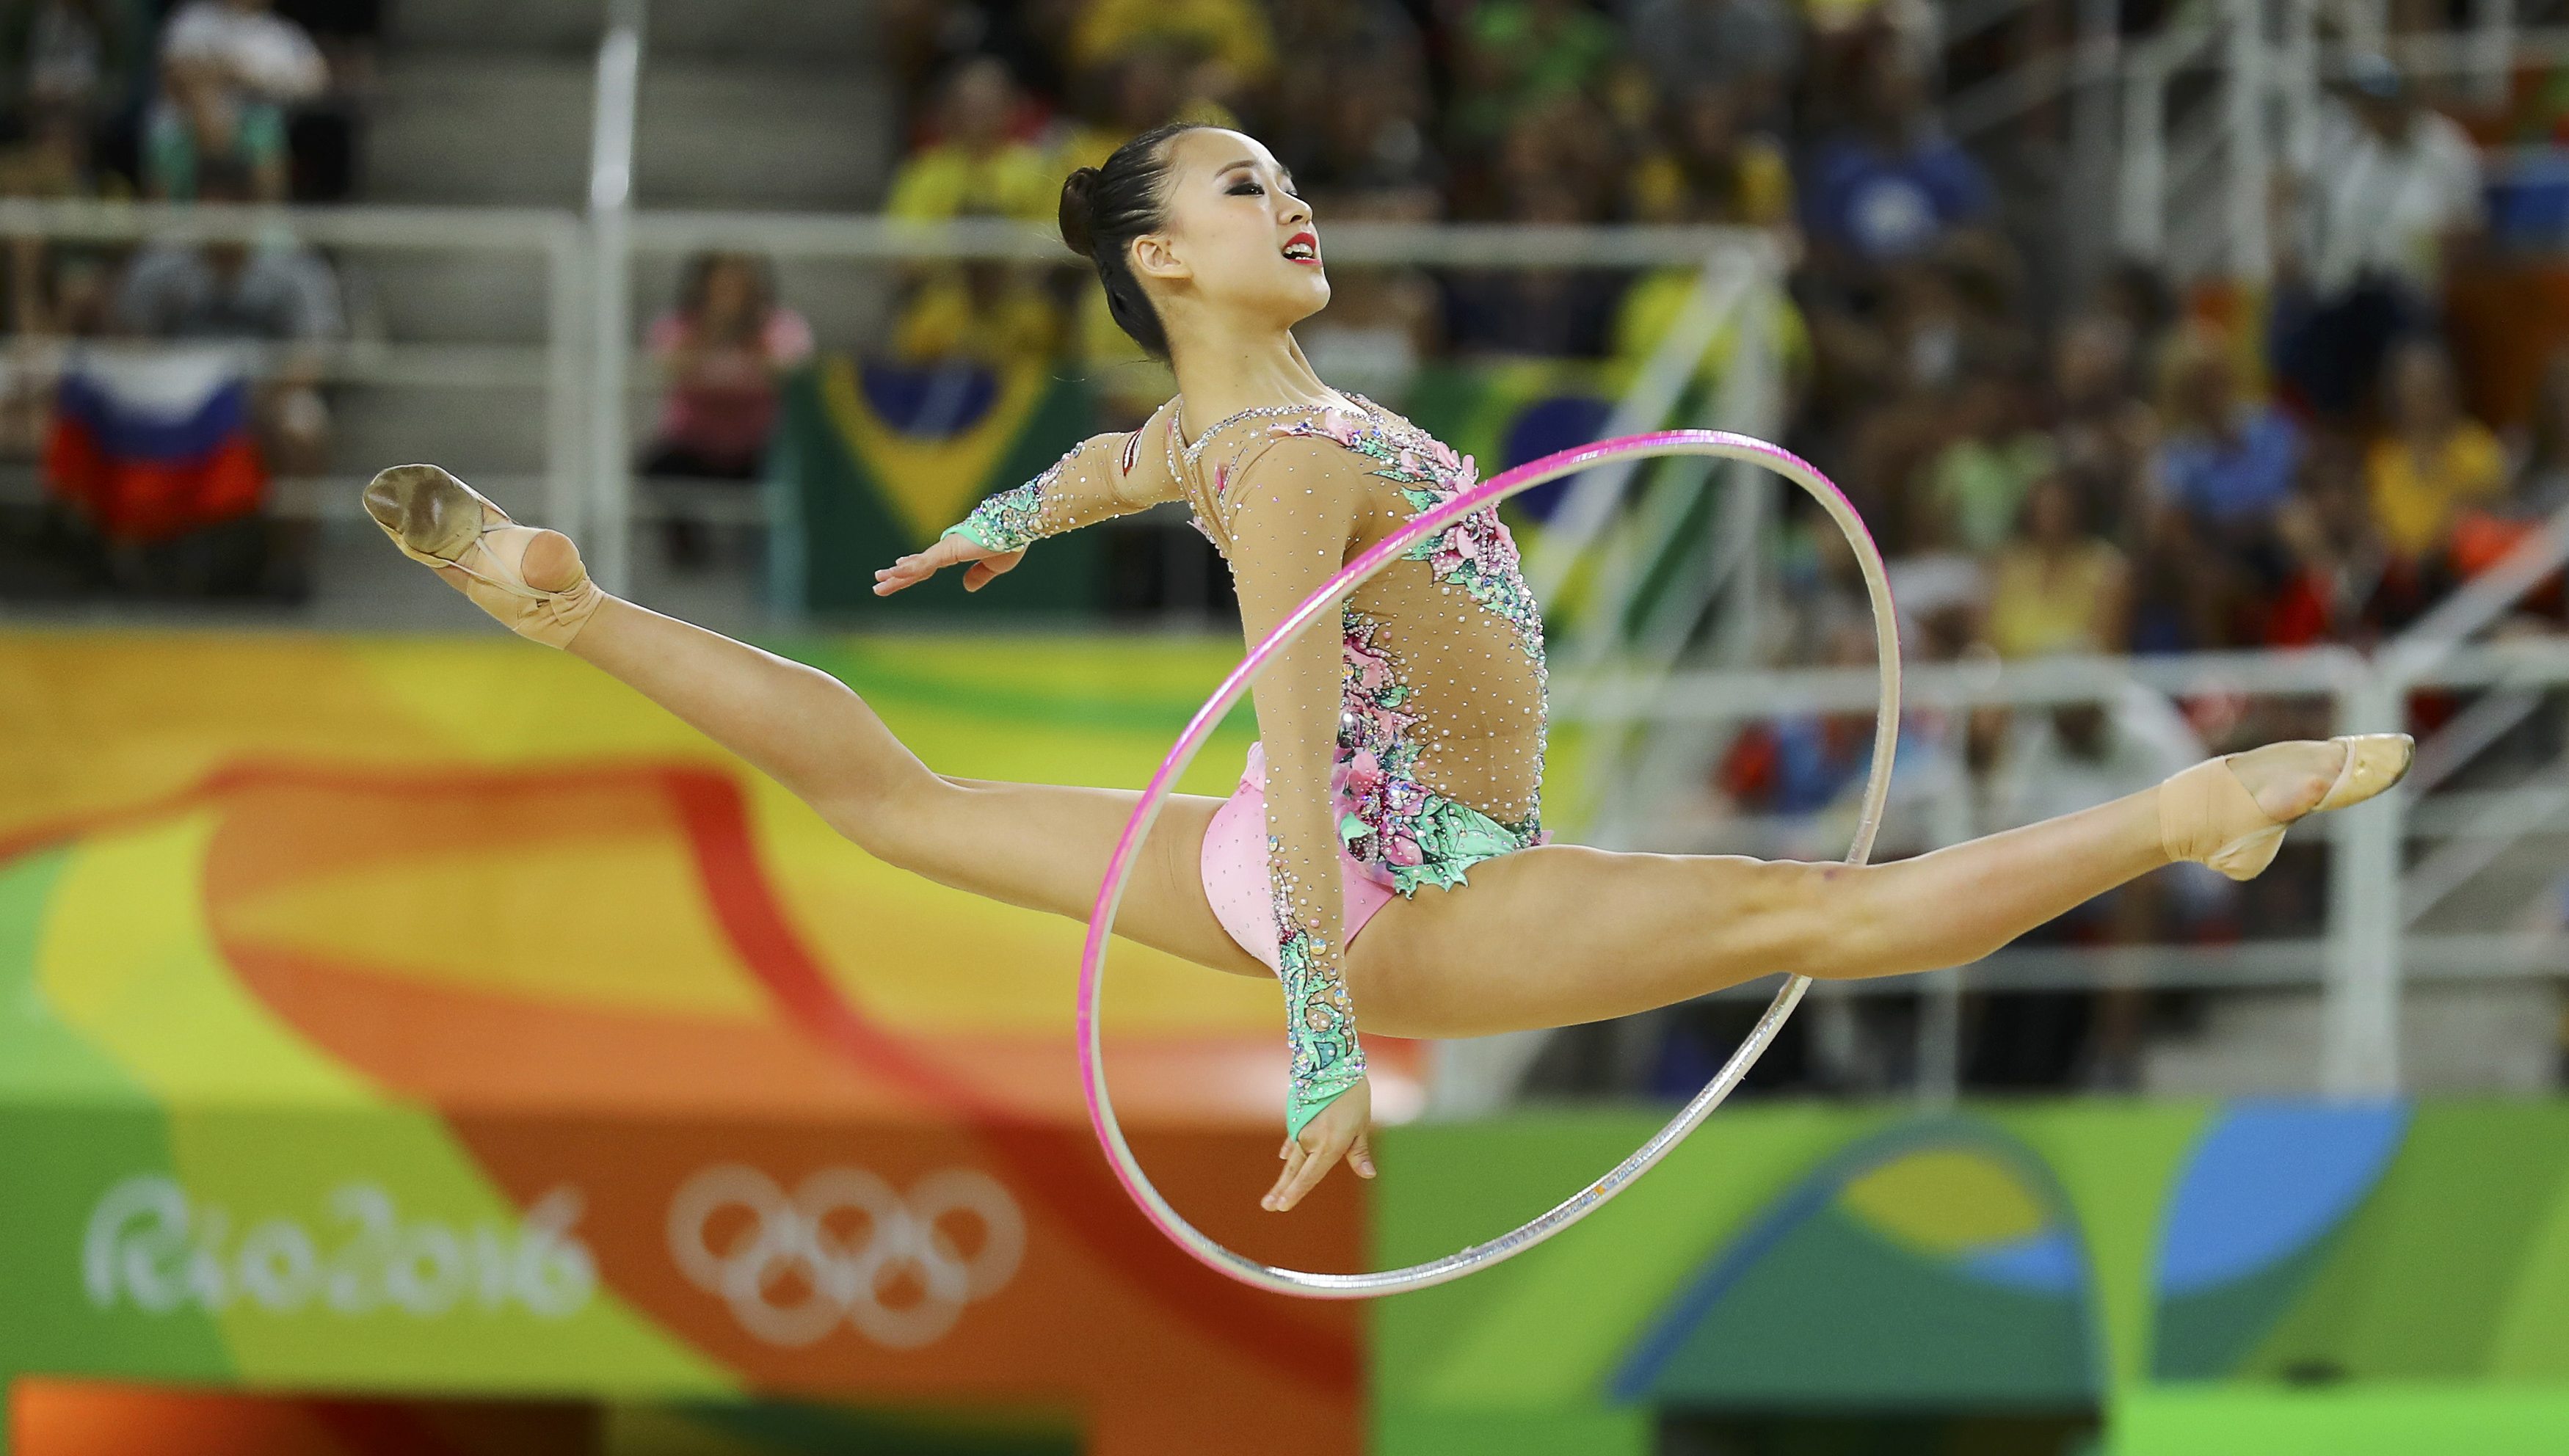 Novias olímpicas presenta: La muñequita de la gimnasia artística… poesía en movimiento (FOTOS)